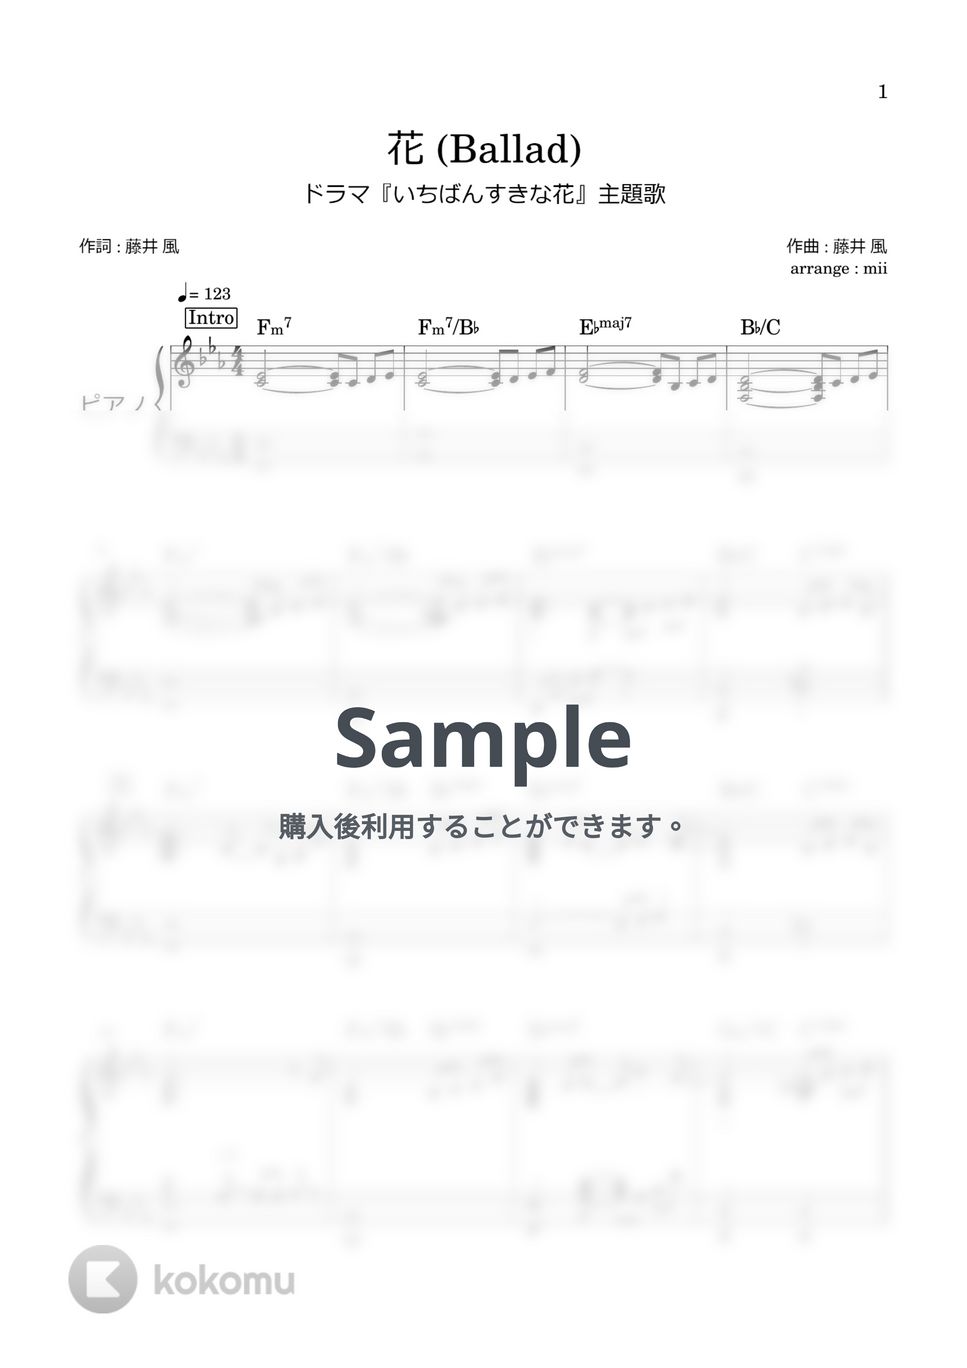 藤井風 - 花(Ballad) (ピアノソロ いちばんすきな花) by miiの楽譜棚